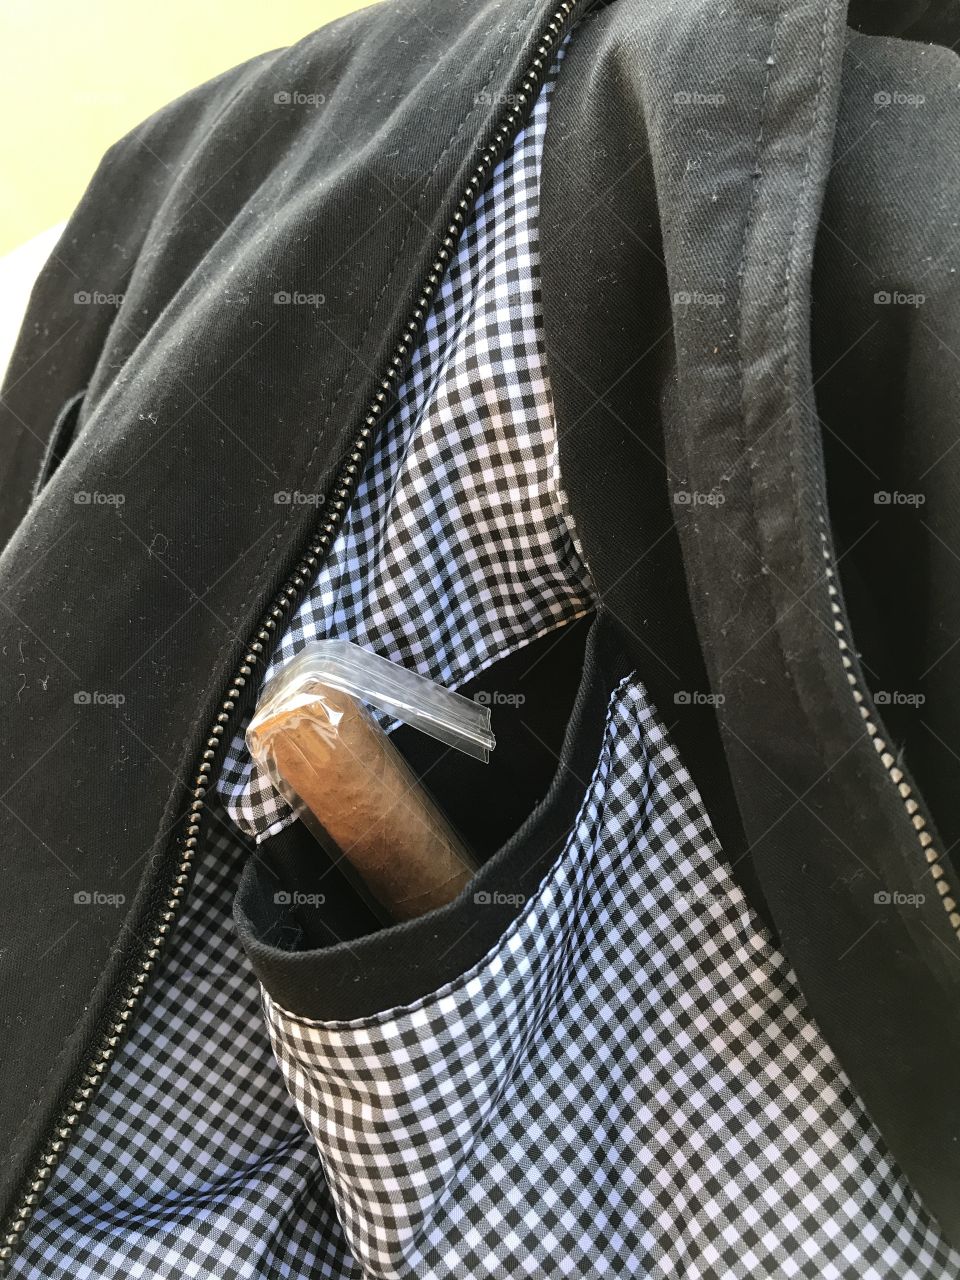 Cigar in jacket pocket.